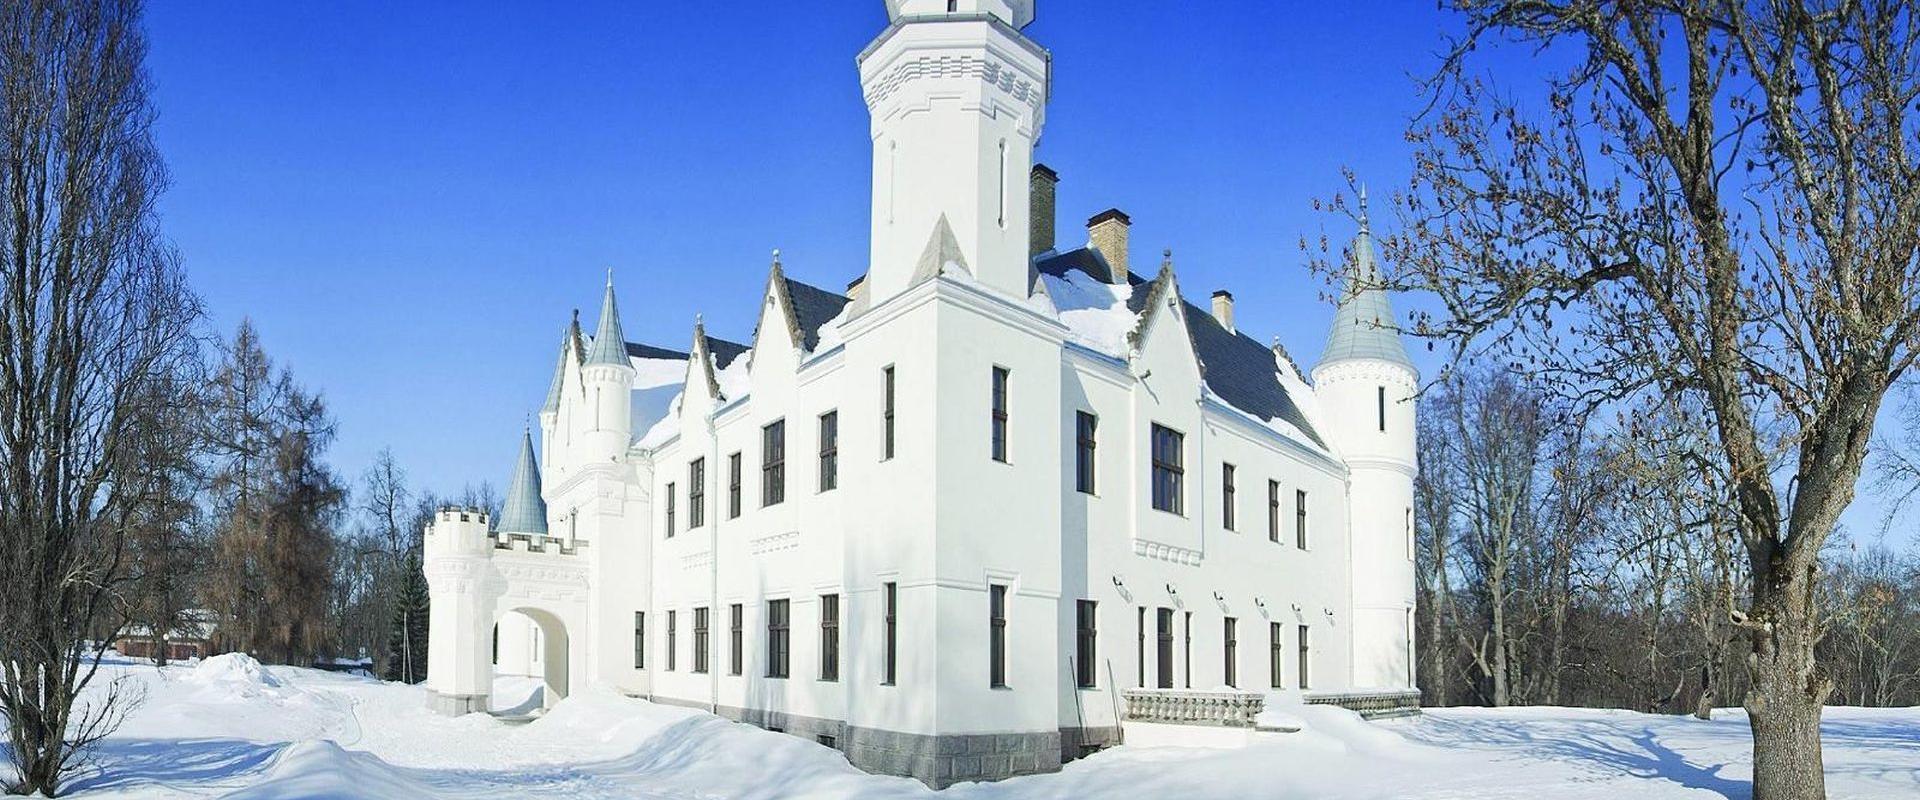 Schloss Alatskivi in einem schneereichen Winter